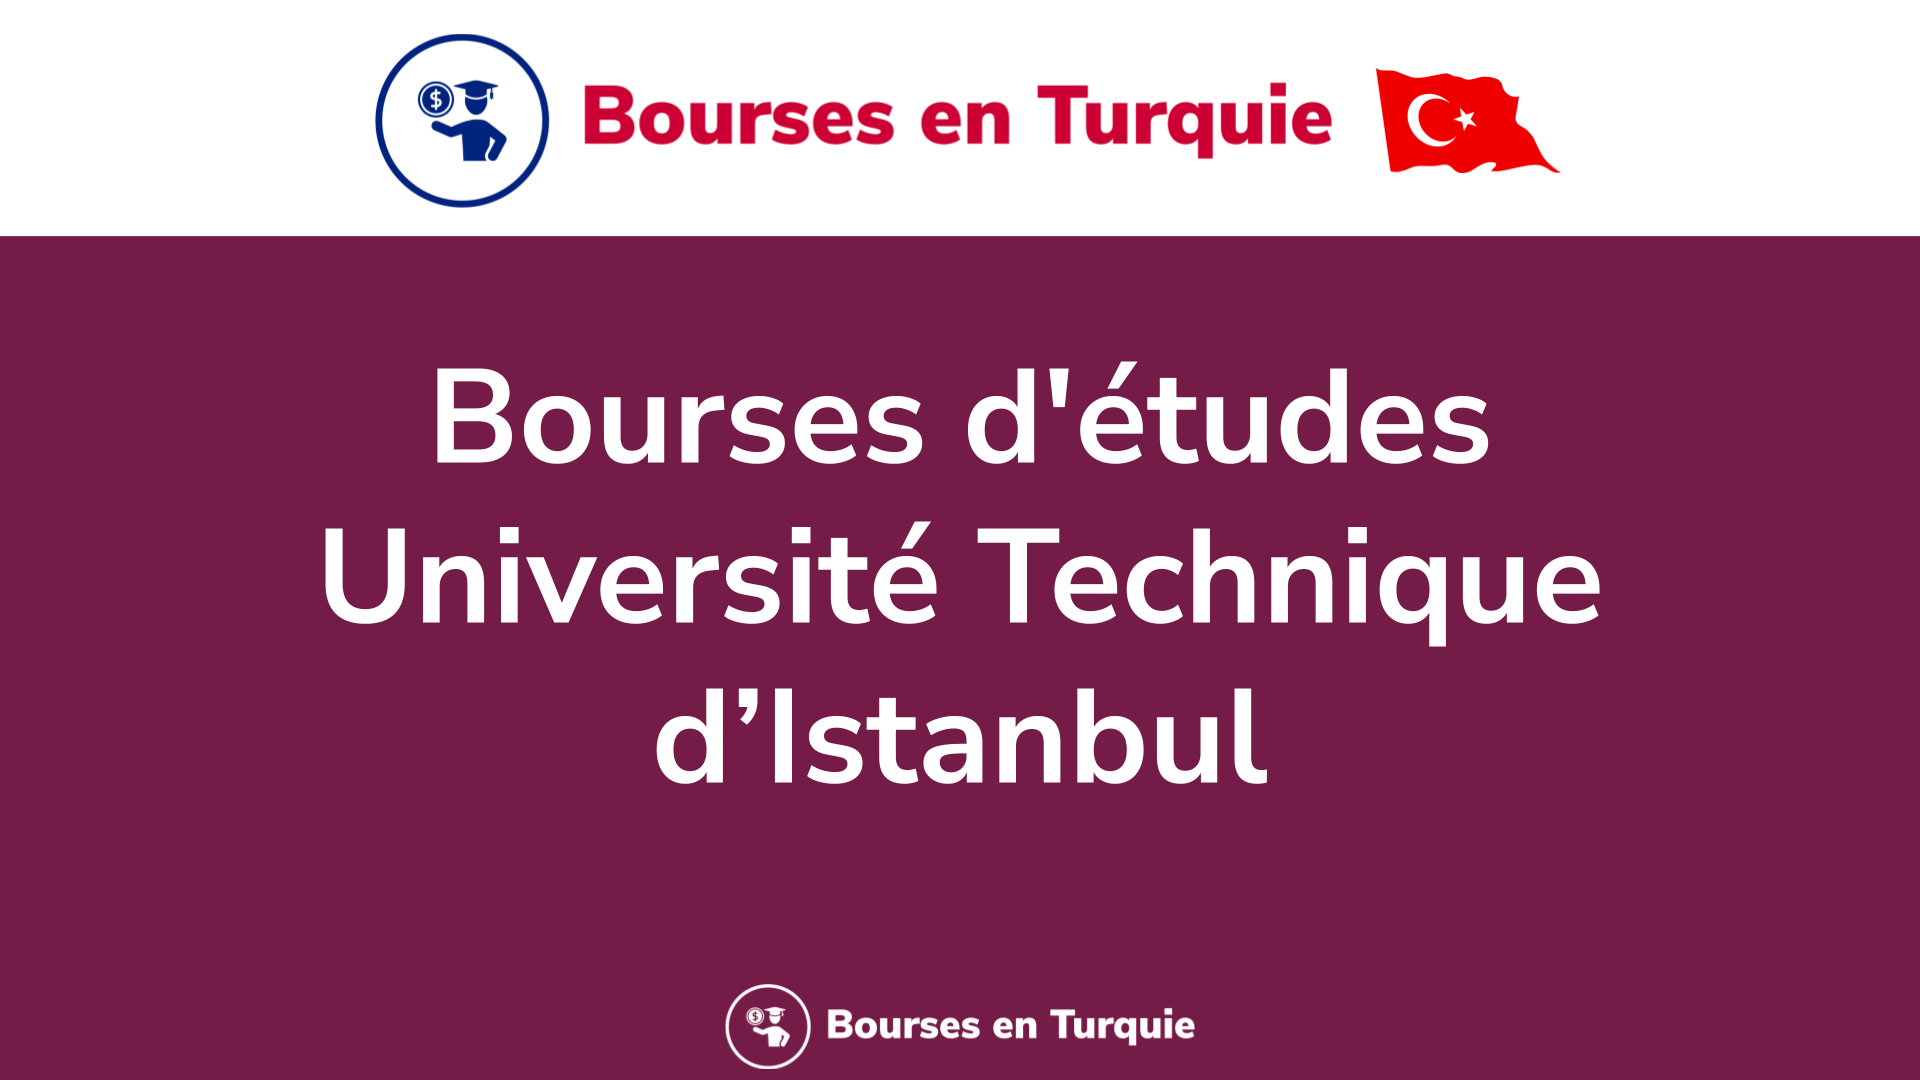 Bourses d'études Université Technique d’Istanbul